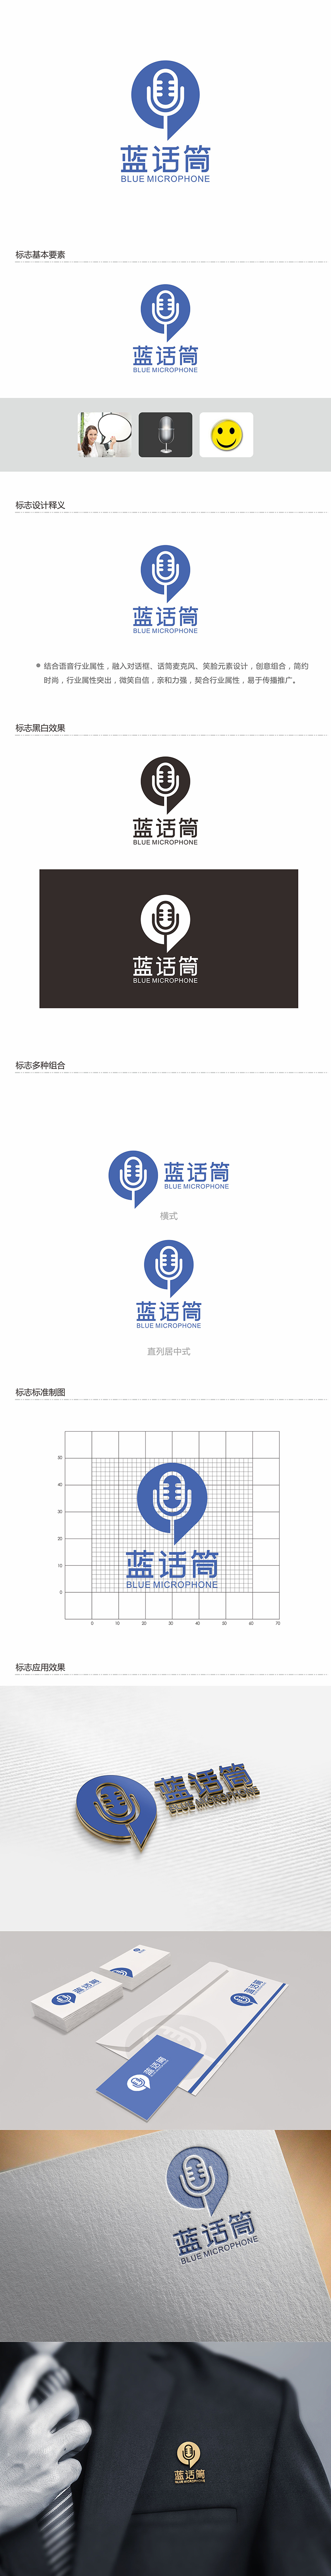 郑锦尚的蓝话筒【重新整理设计需求】logo设计